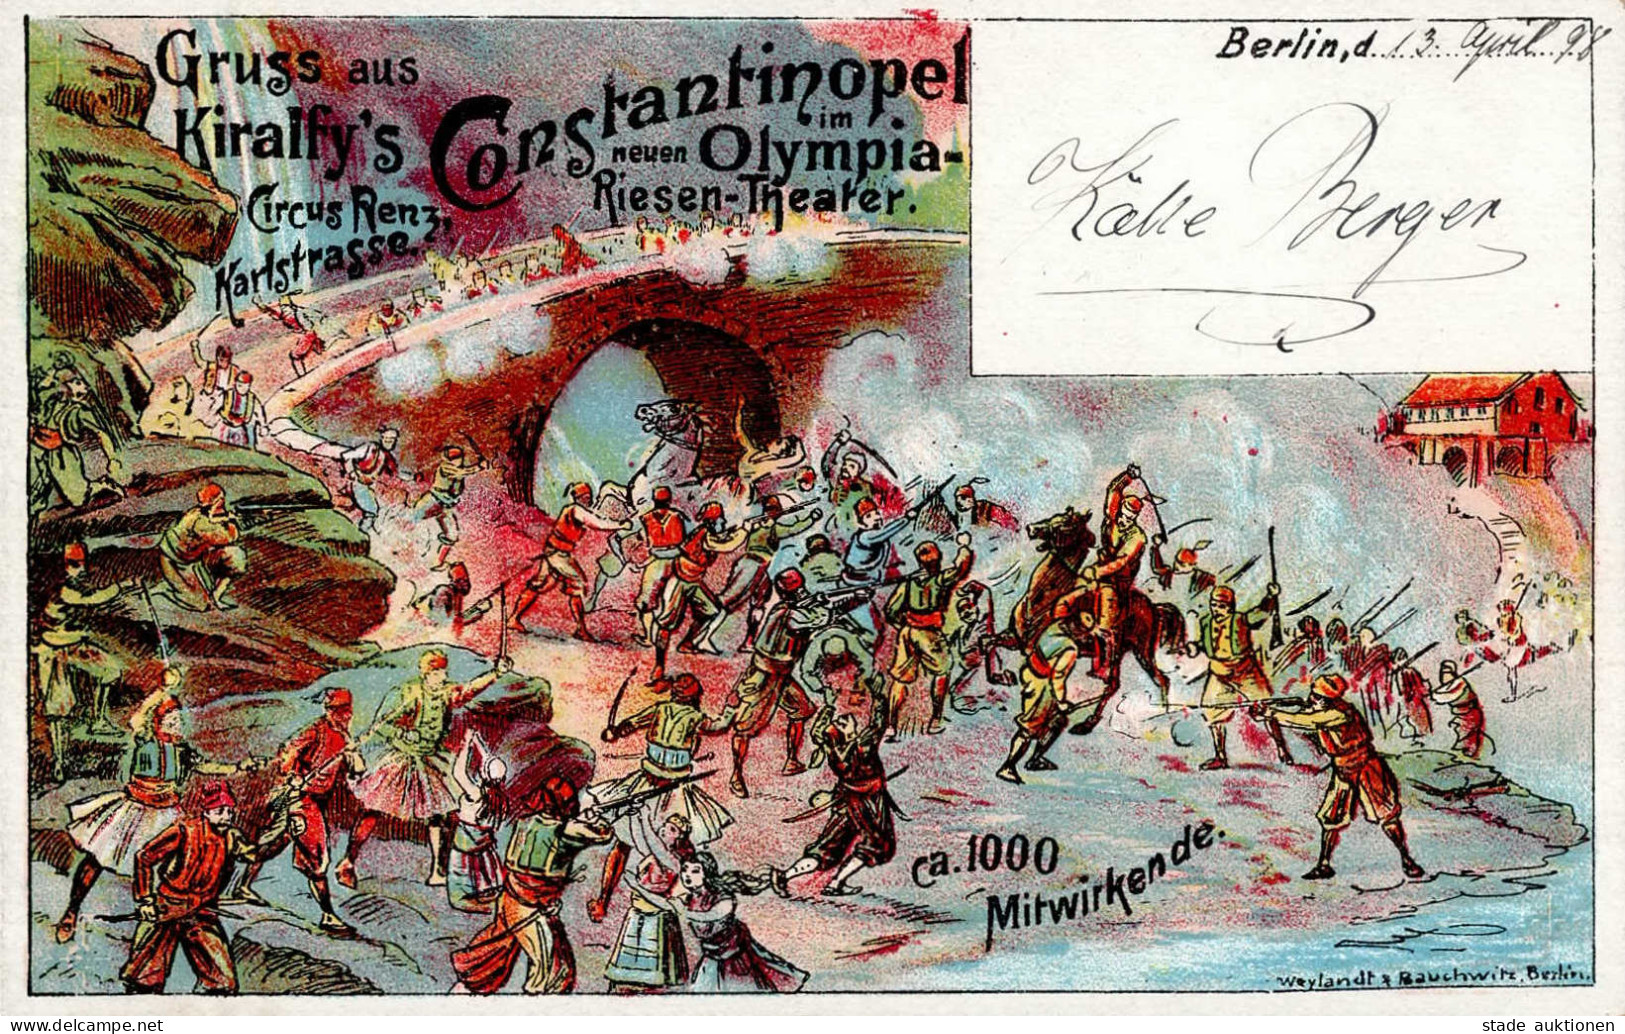 Zirkus Renz Berlin Constantinopel Im Neuen Olympia-Riesen-Theater I-II - Cirque